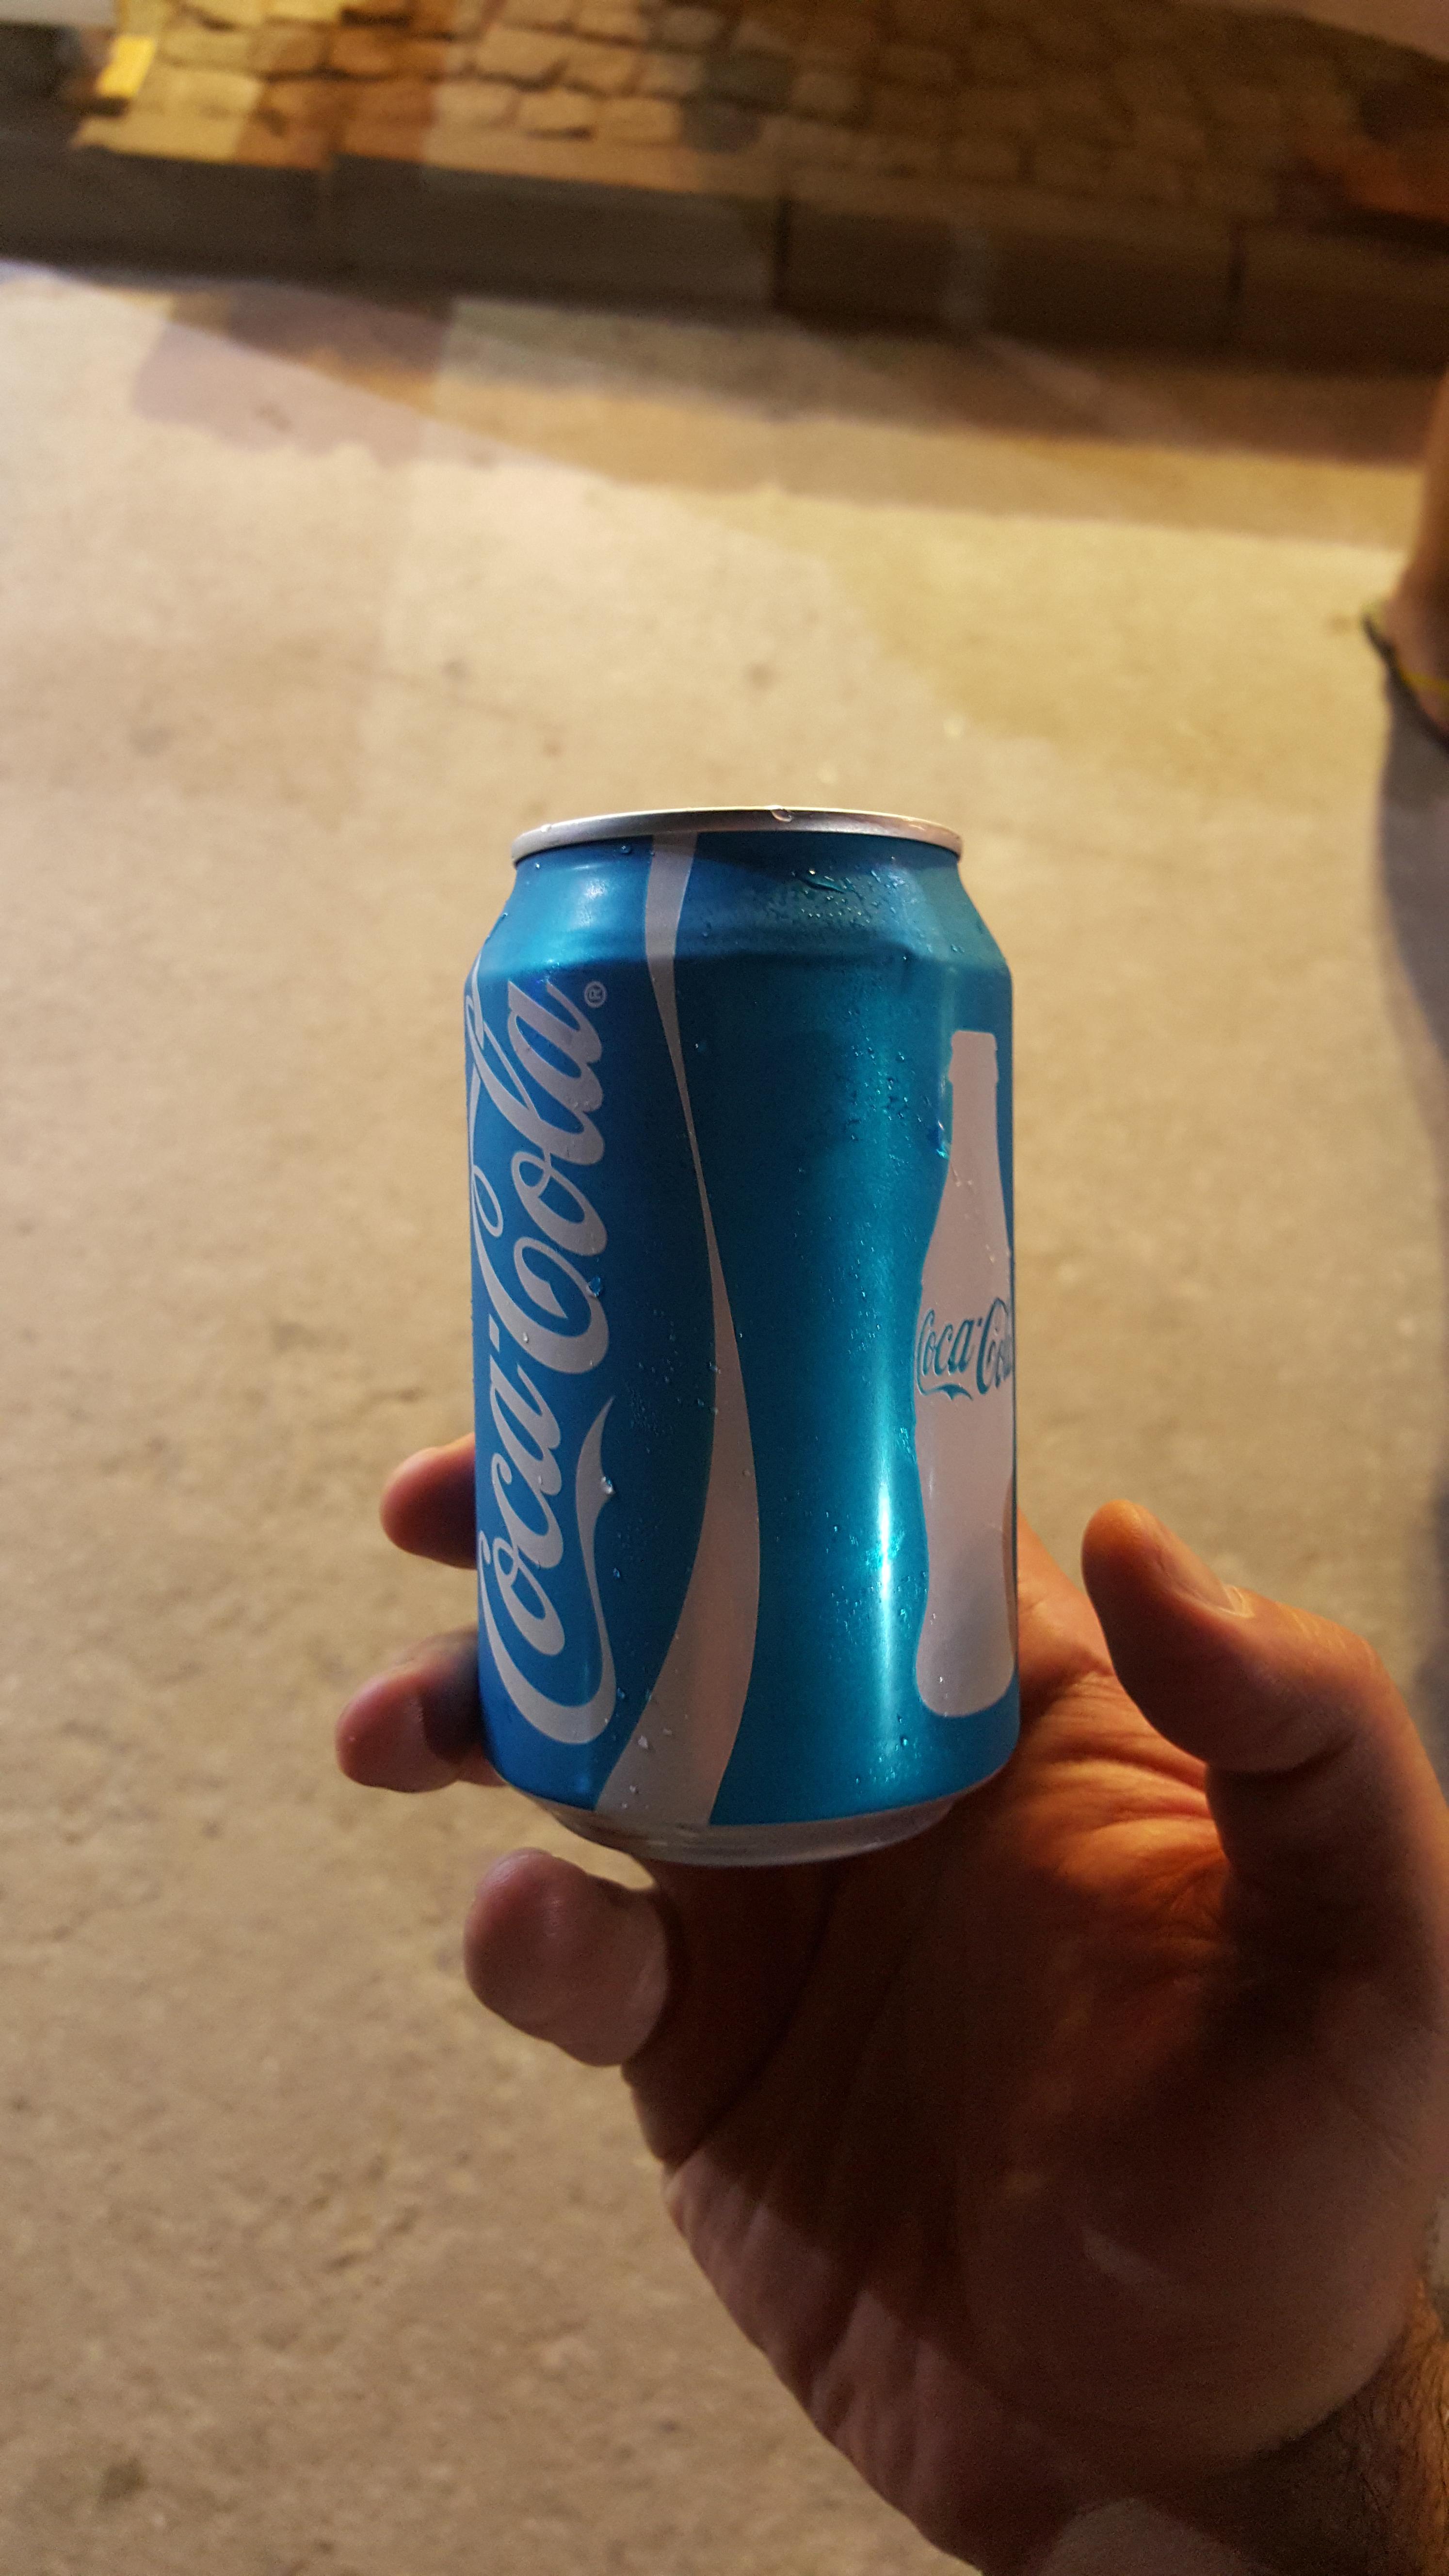 Blue Coke can sold in Turkey.